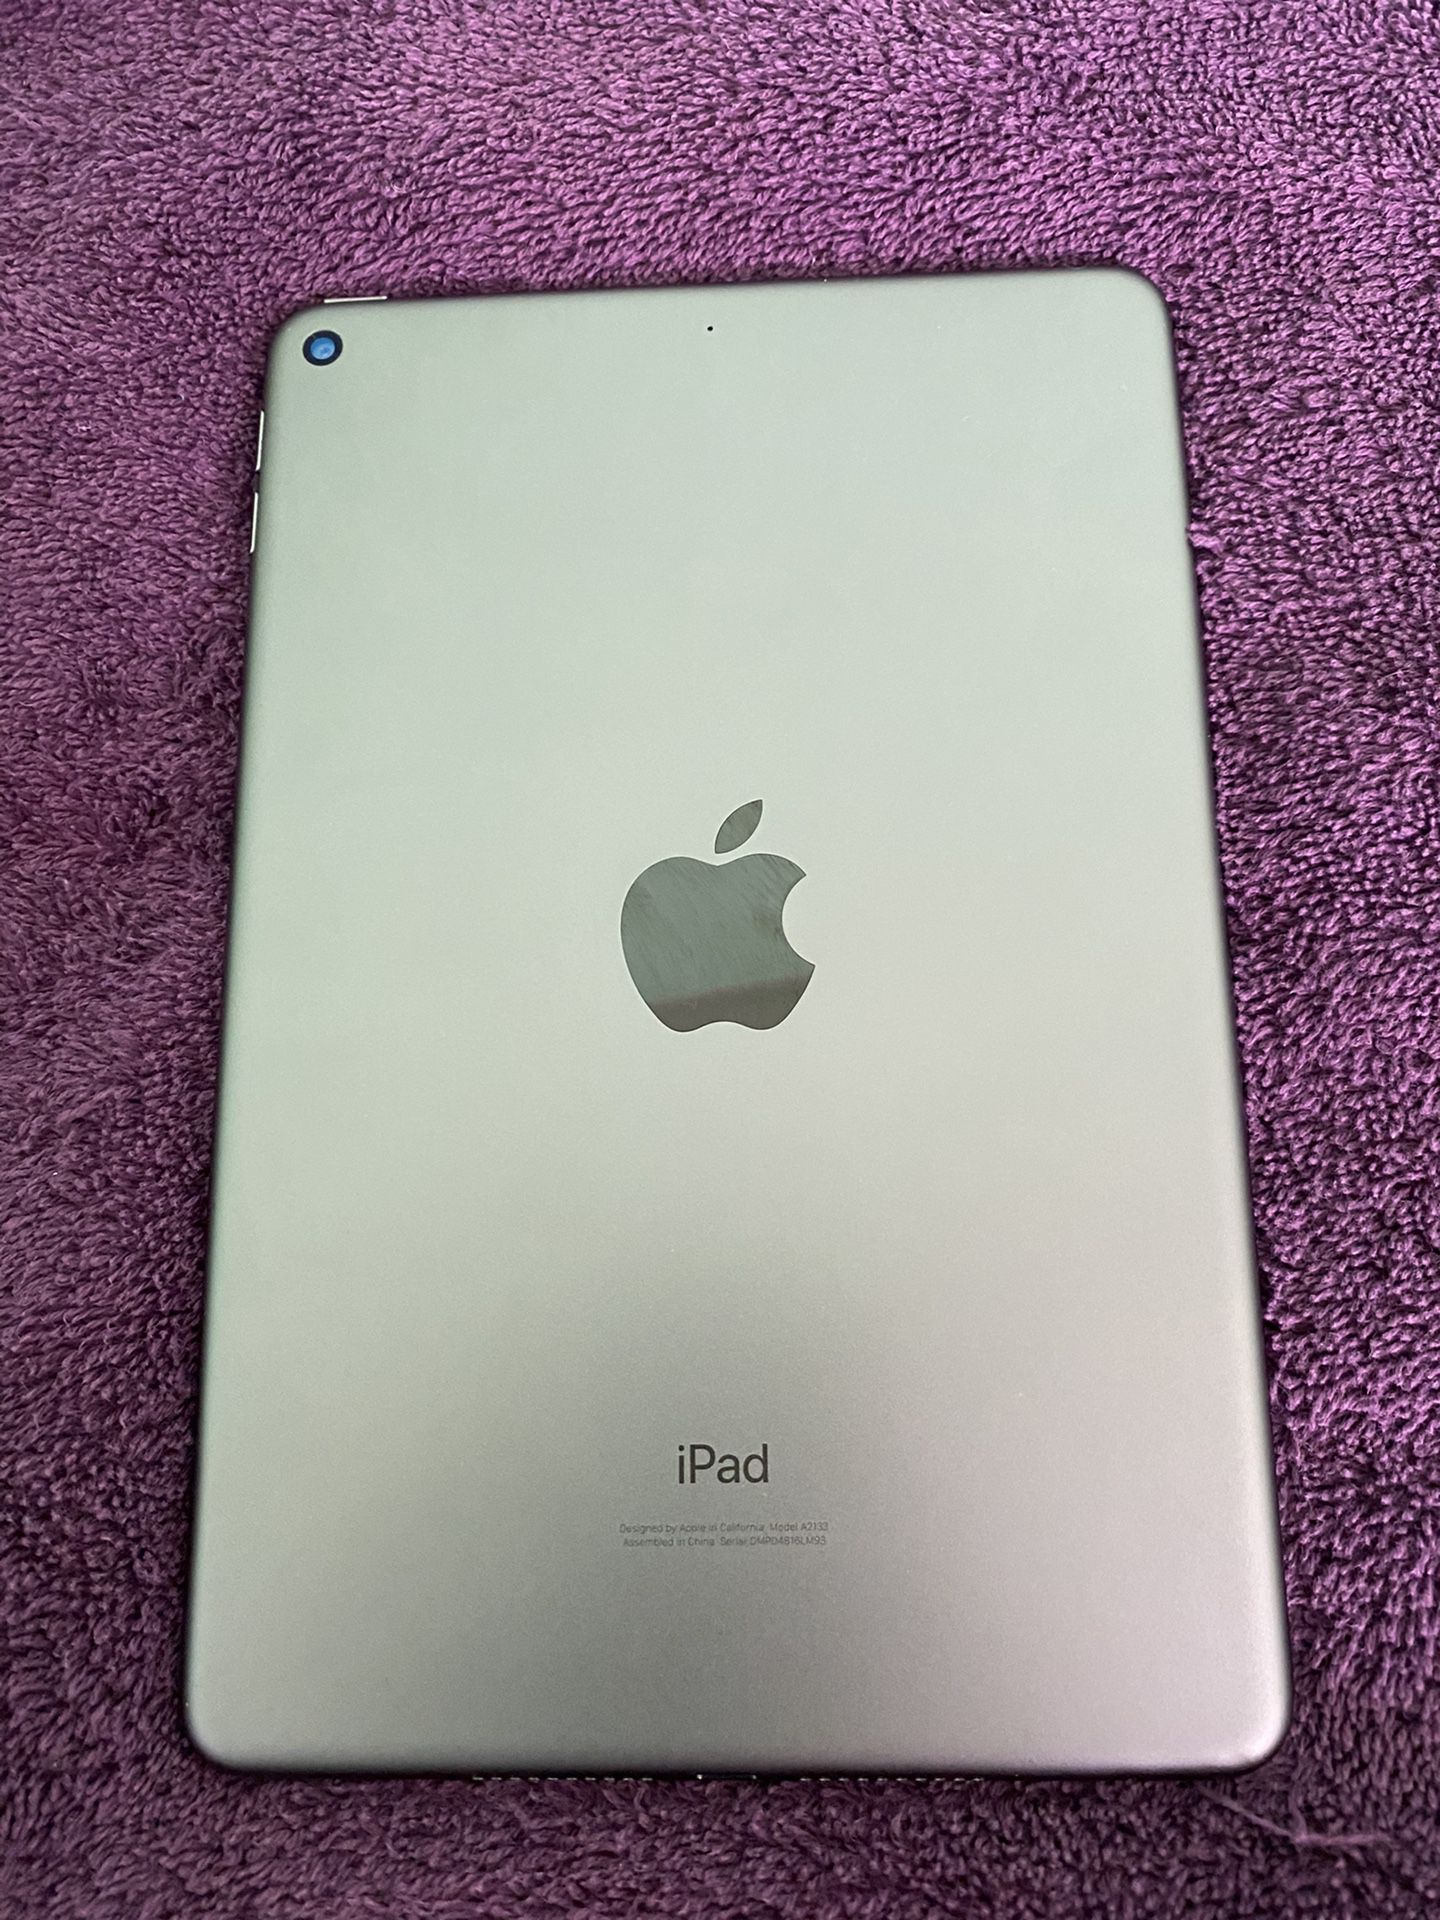 Apple iPad mini 5th generation, Wi-Fi only